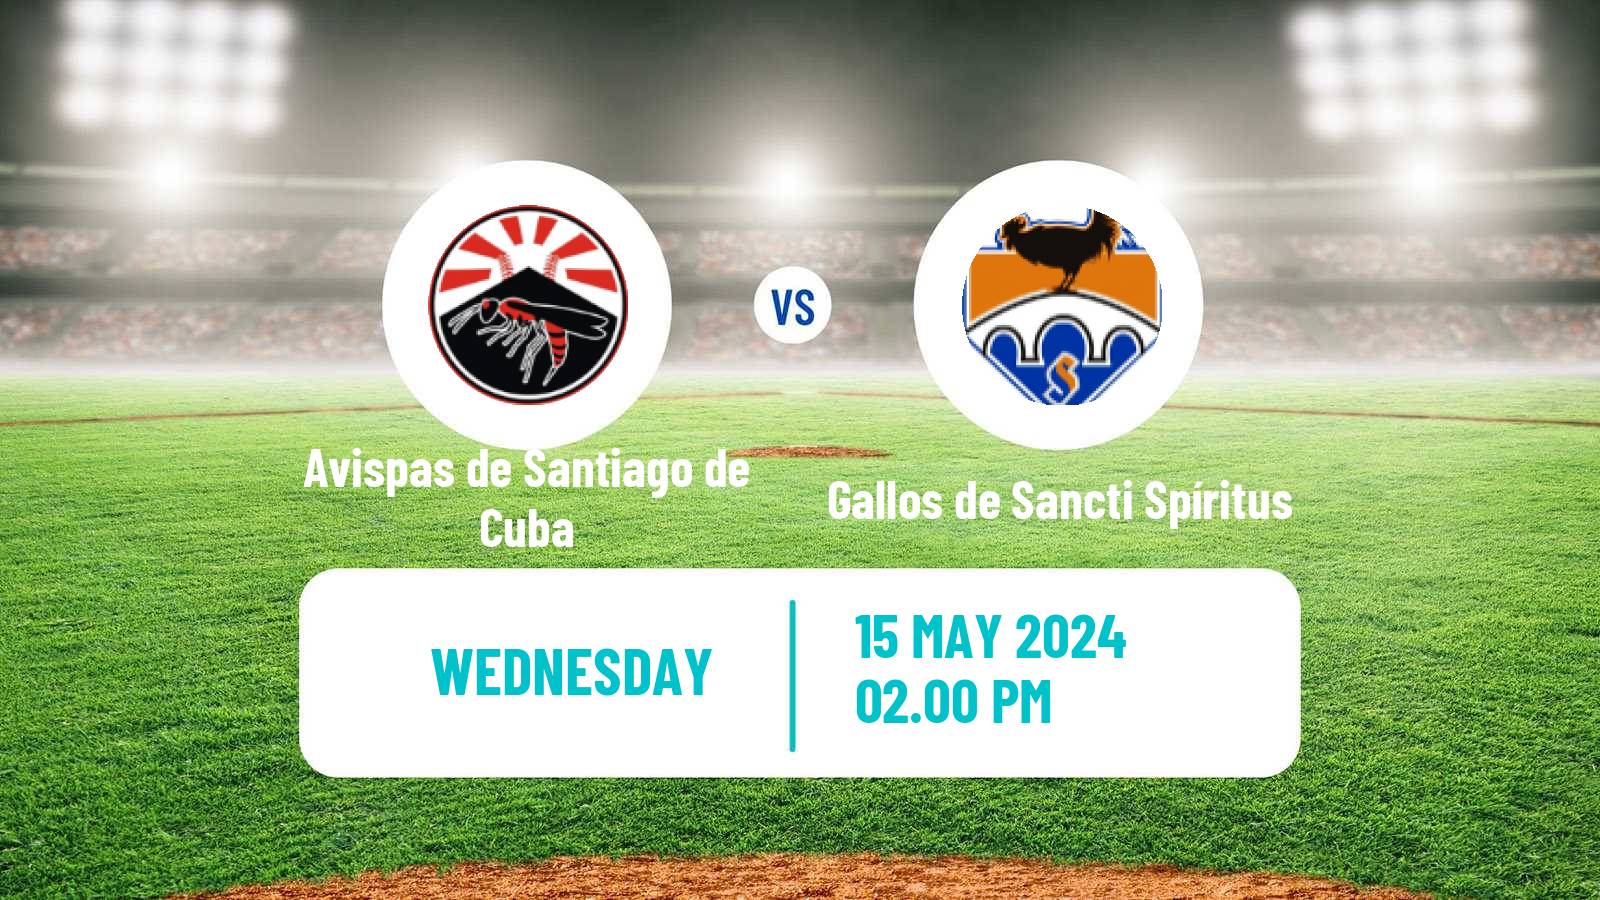 Baseball Cuba Serie Nacional Baseball Avispas de Santiago de Cuba - Gallos de Sancti Spíritus